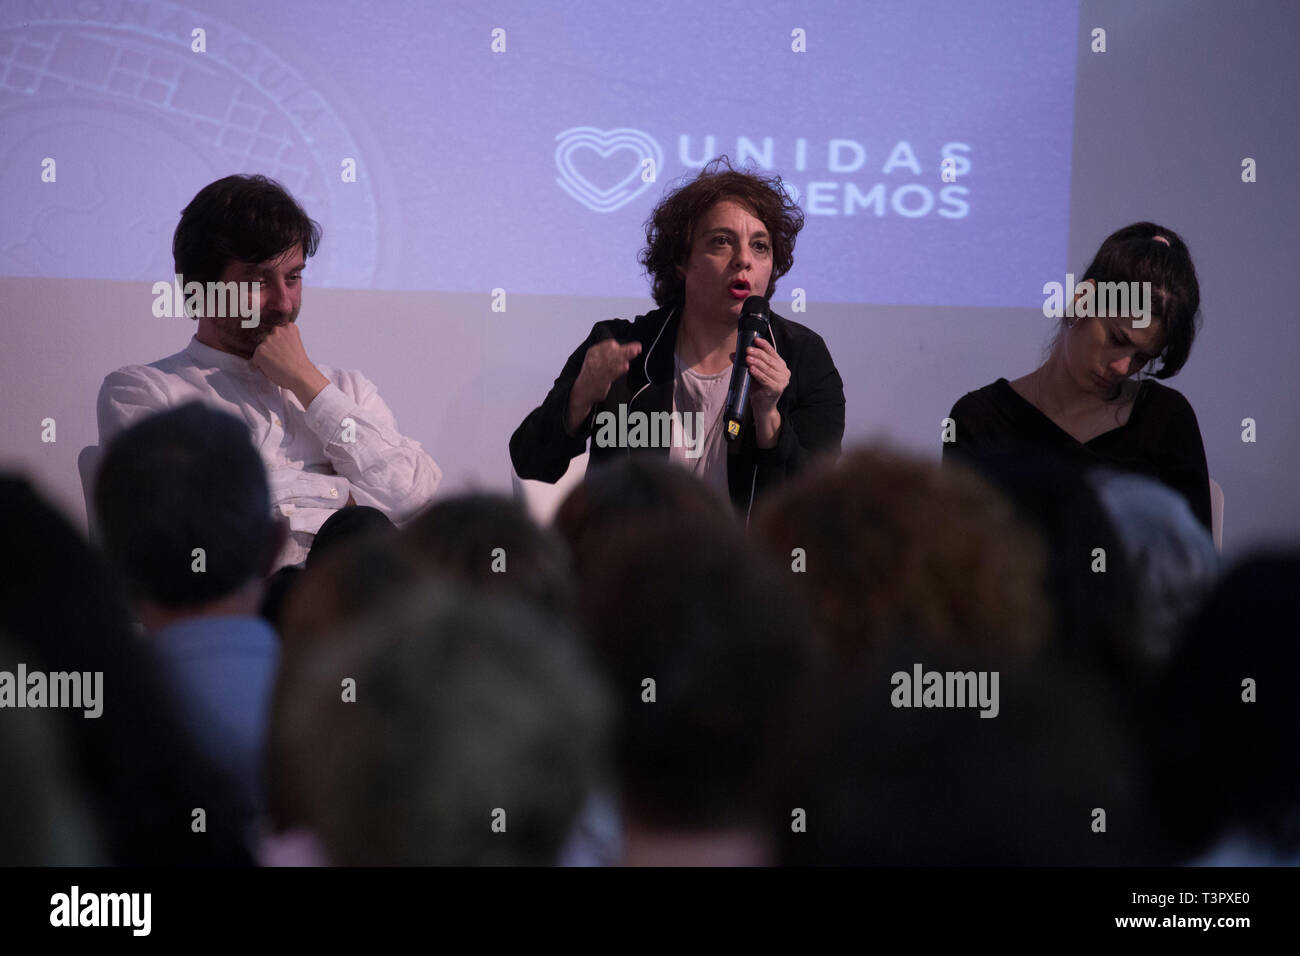 Gloria Elizo, kongressabgeordnete von Podemos beobachtet, als er während der Debatte. Debatte über die so genannte Ewers des Staates, das heißt, die Spionage durch die ehemalige Kommissarin Nähe, die sich in den letzten Wochen über die TV-Programme Beweise oder Berichte, die Schuld politische Gegner der Regierung von Mariano Rajoy zu erstellen hat. Stockfoto